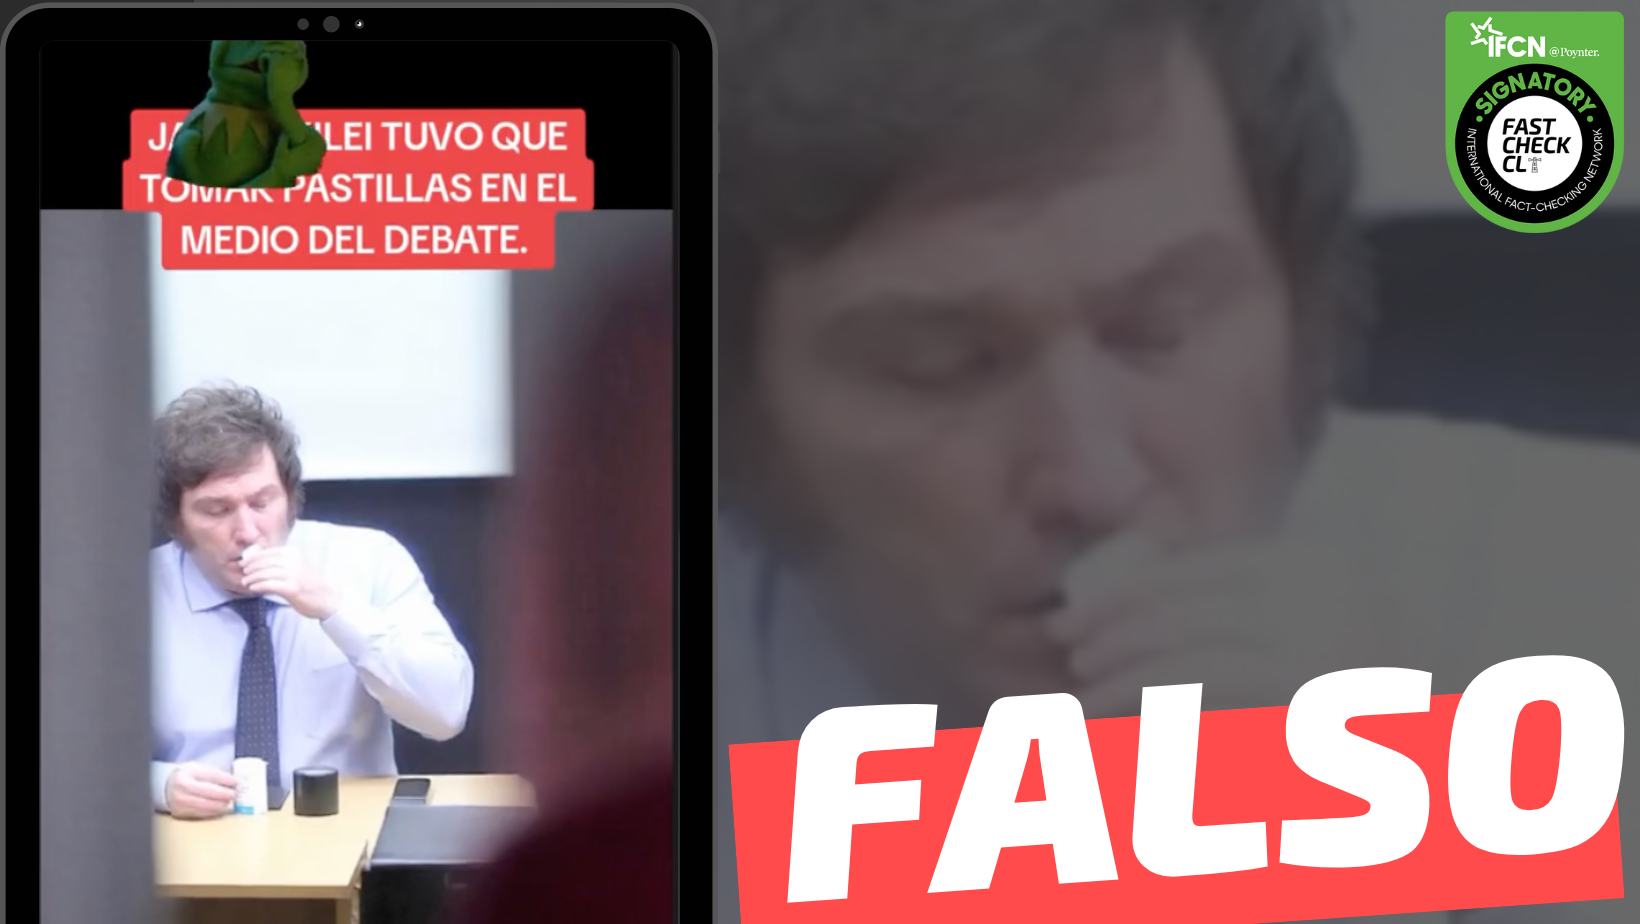 You are currently viewing (Imagen) “Javier Milei tuvo que tomar pastillas en medio del debate”: #Falso